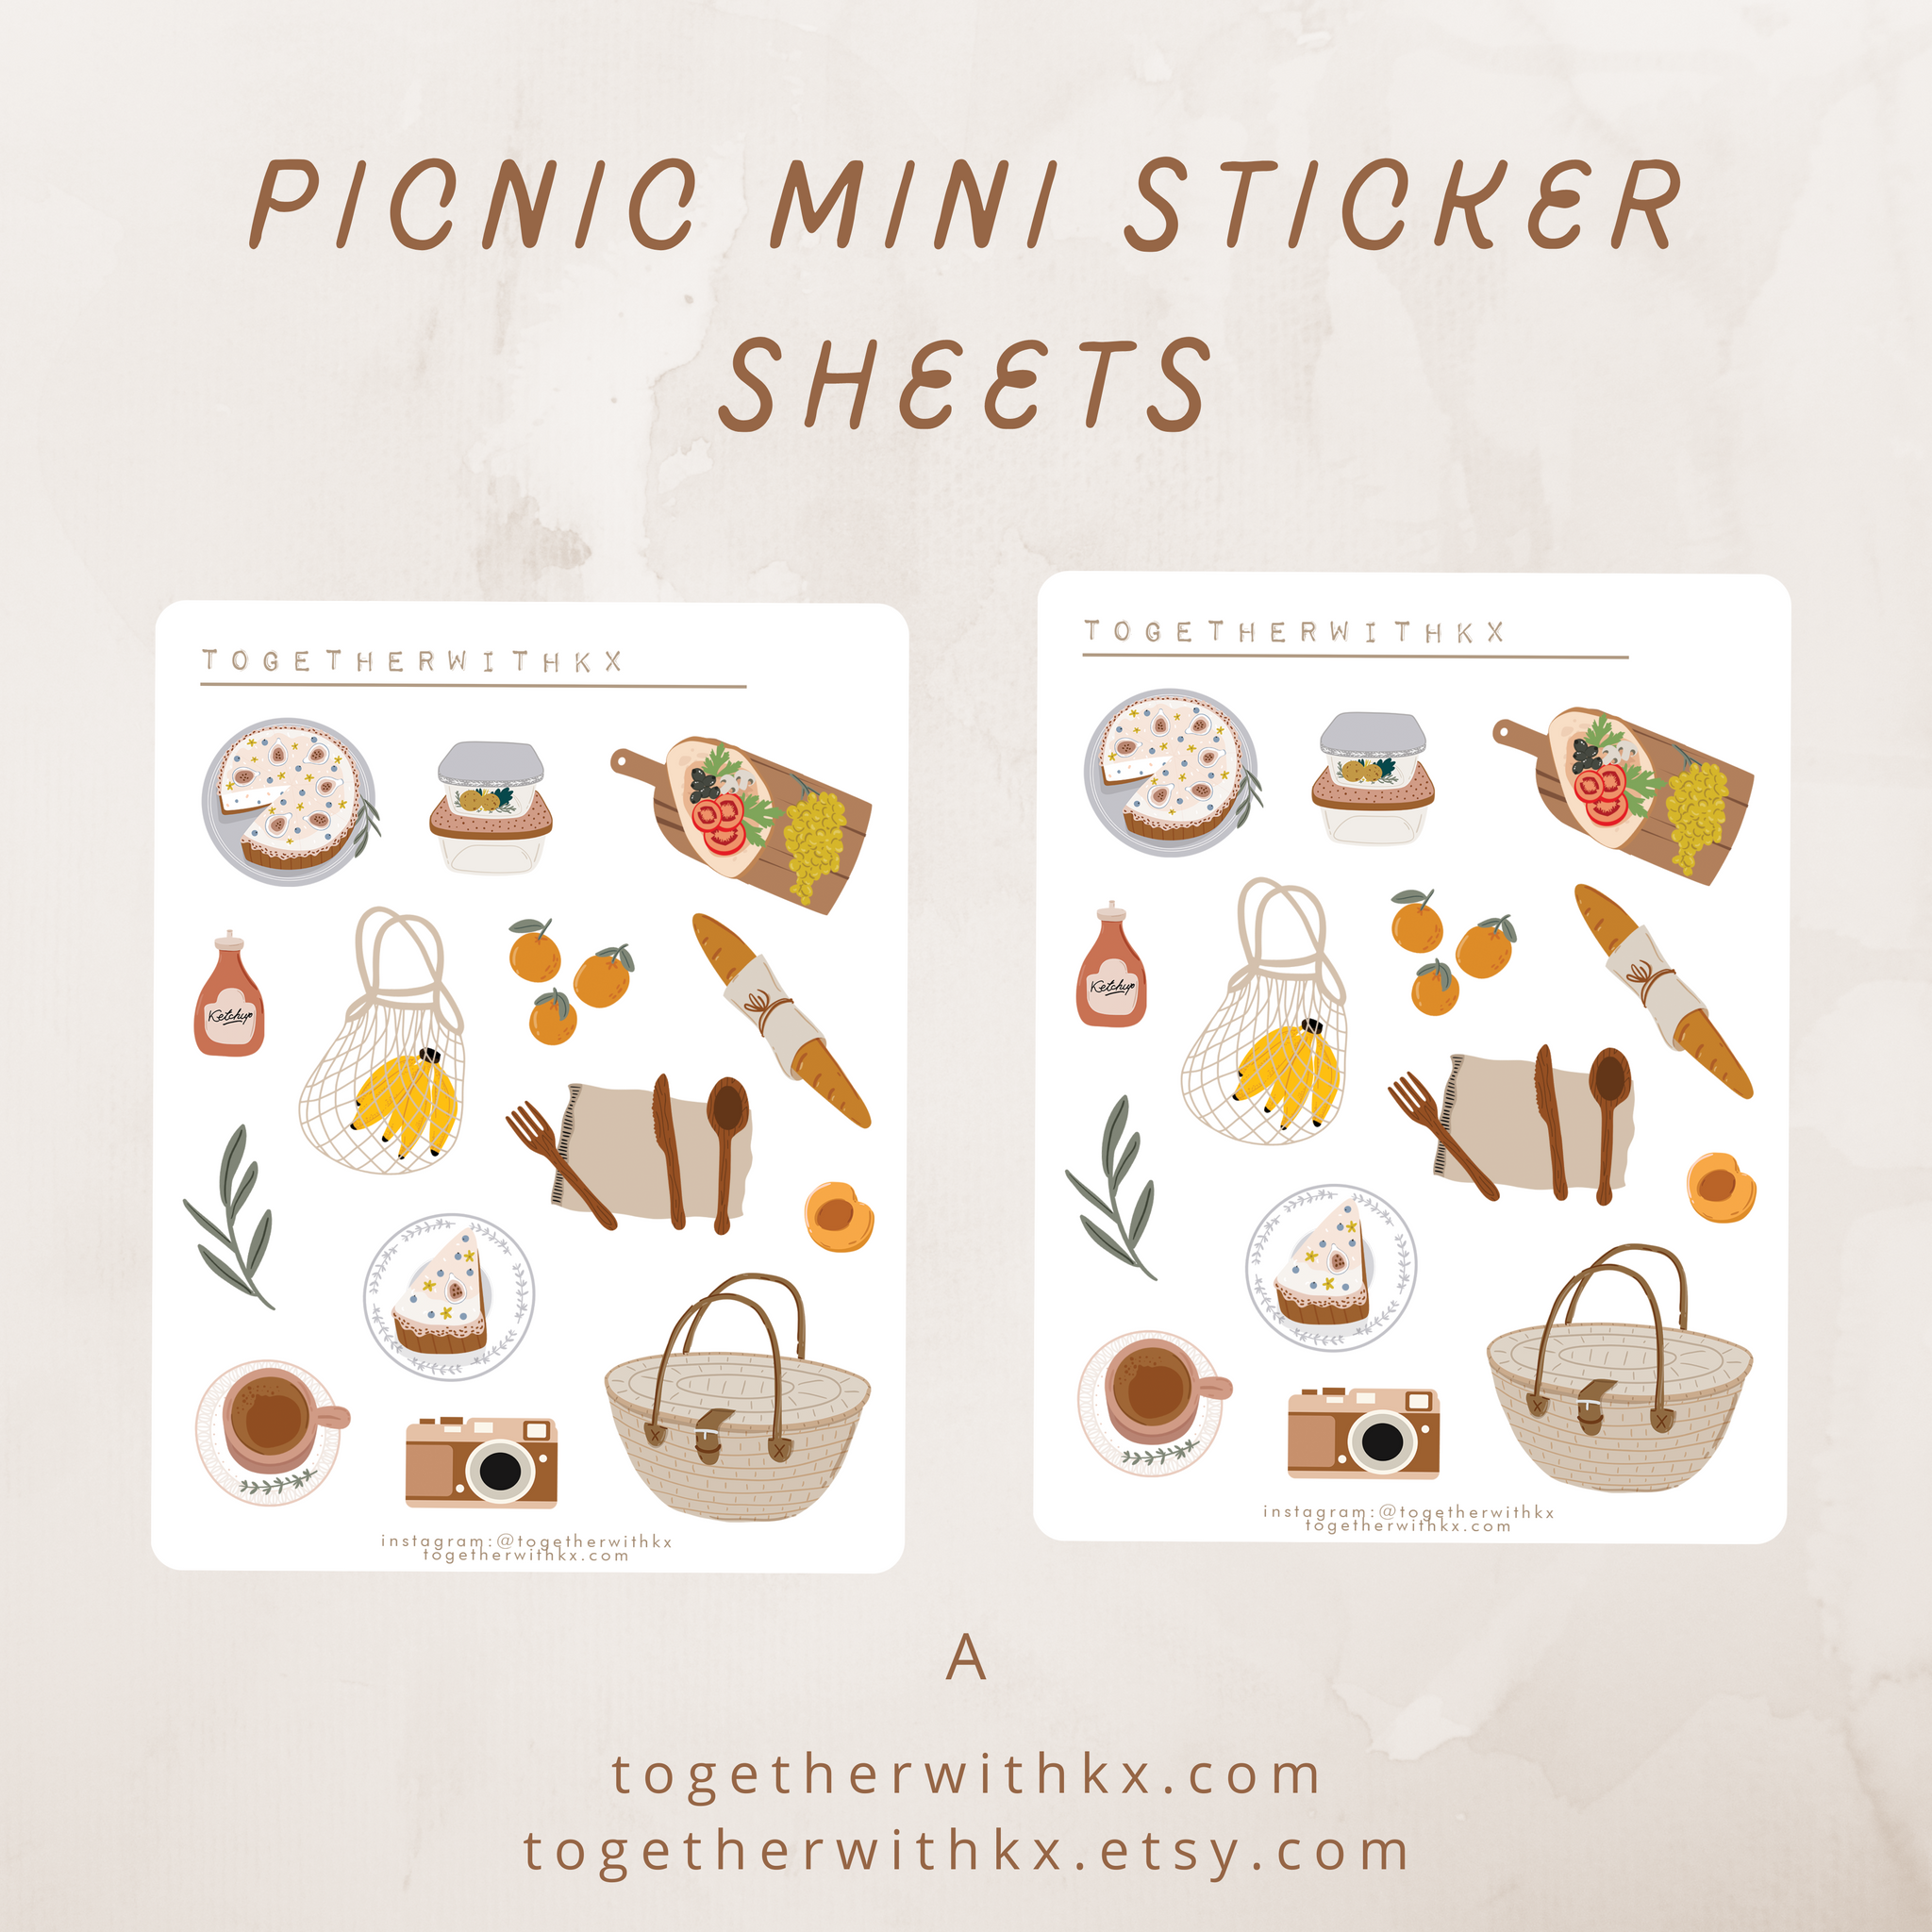 Cute Mini Stickers Sheet